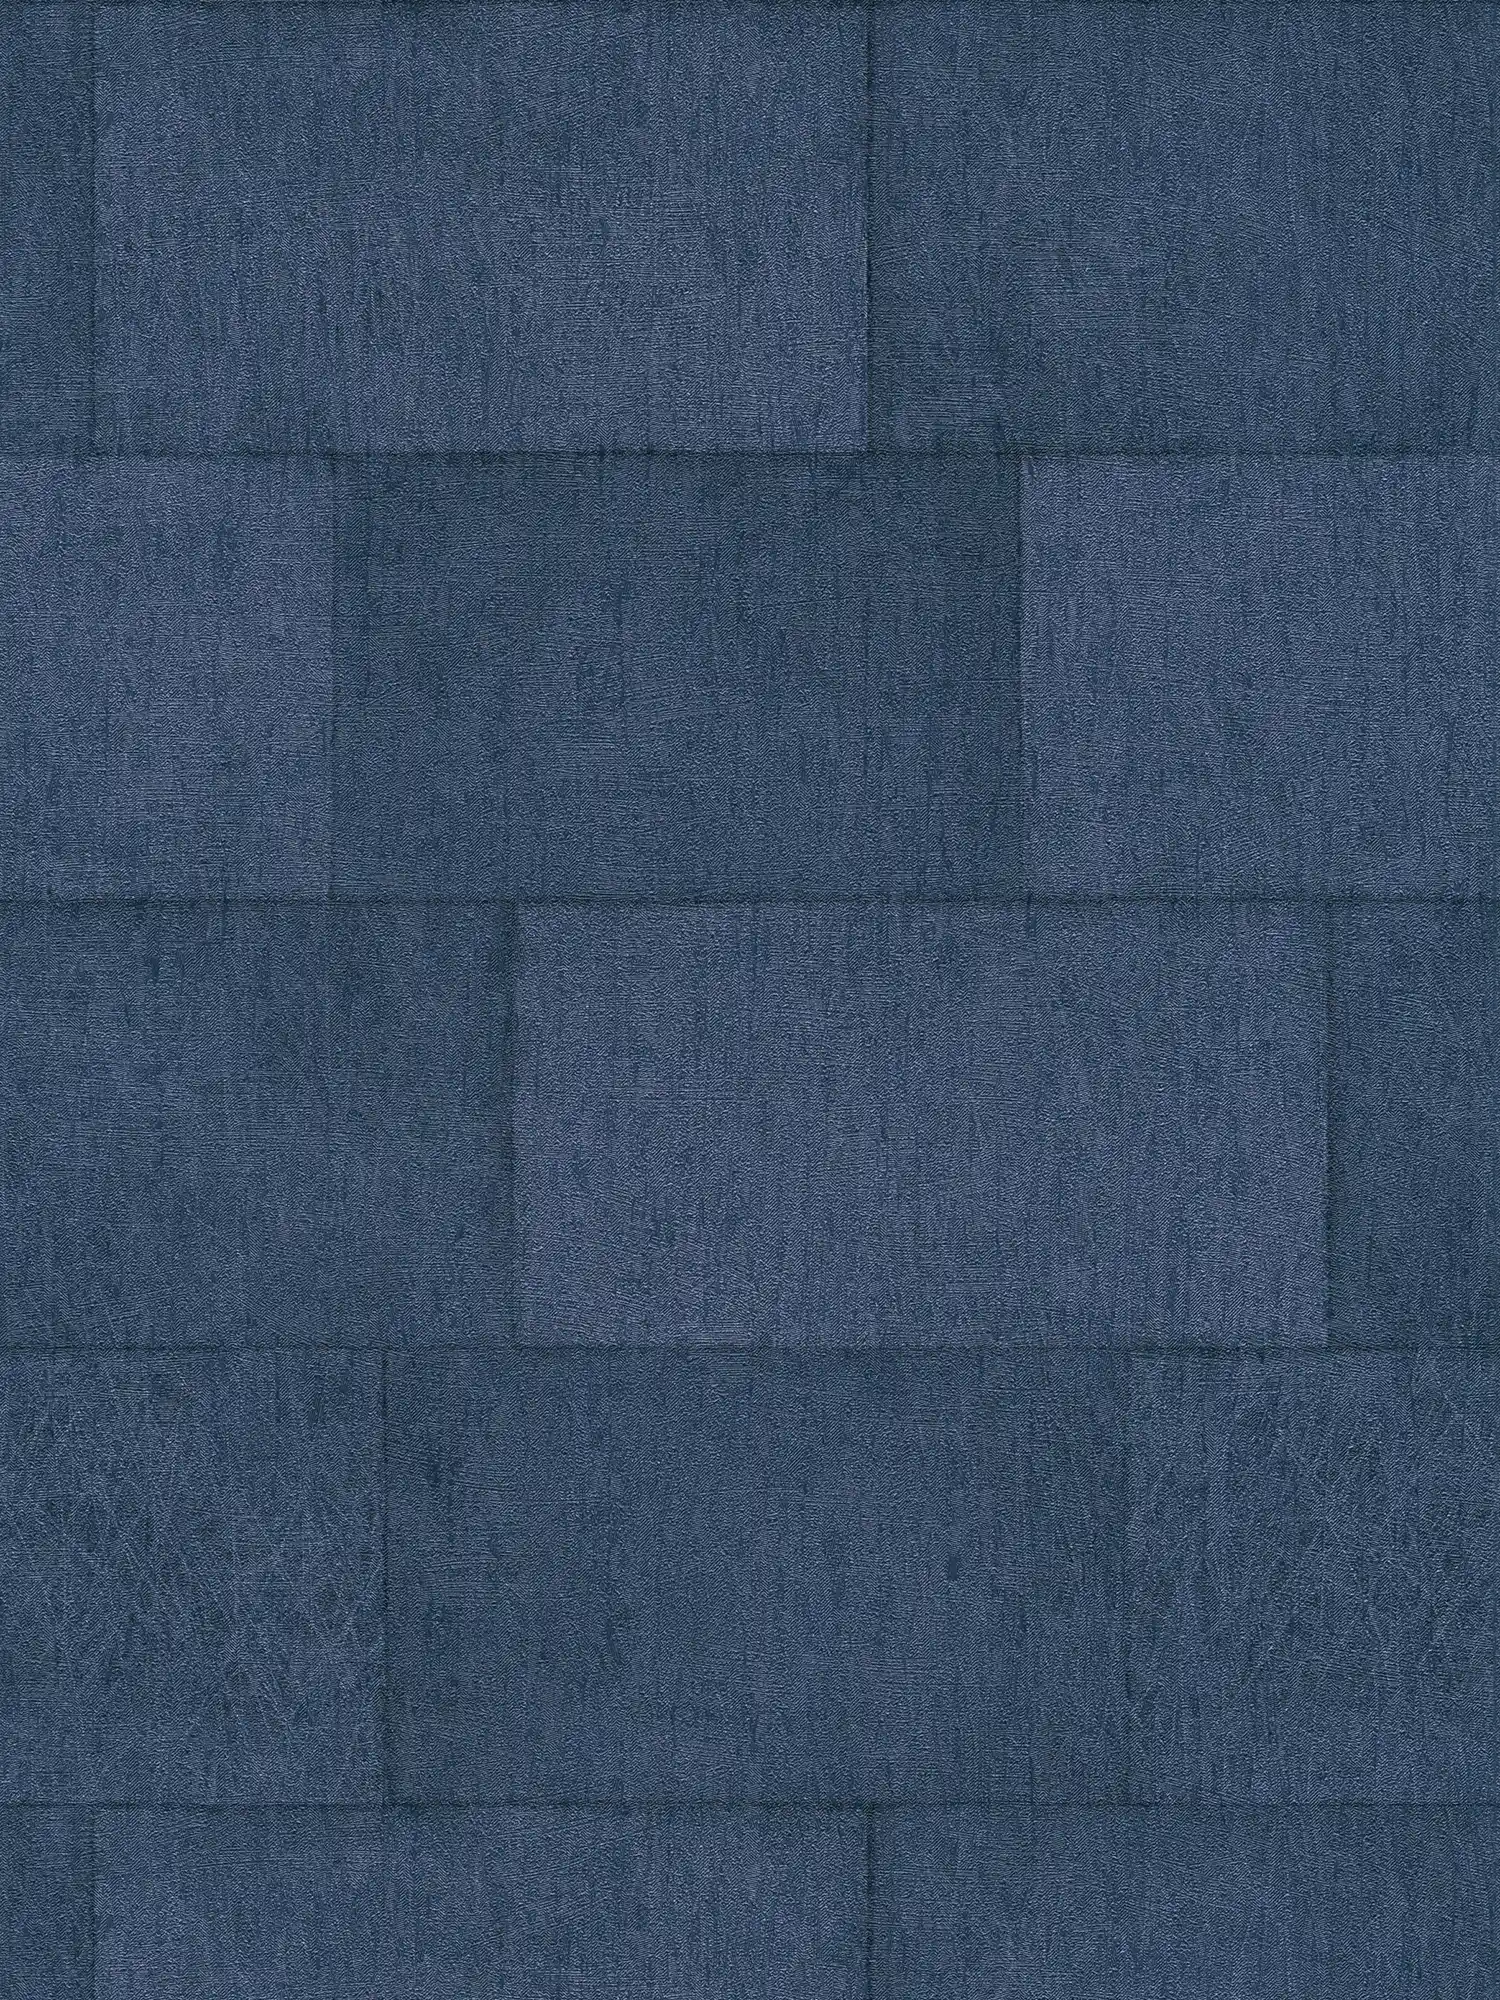 Papel pintado de piedra azul oscuro con efecto brillante - azul
